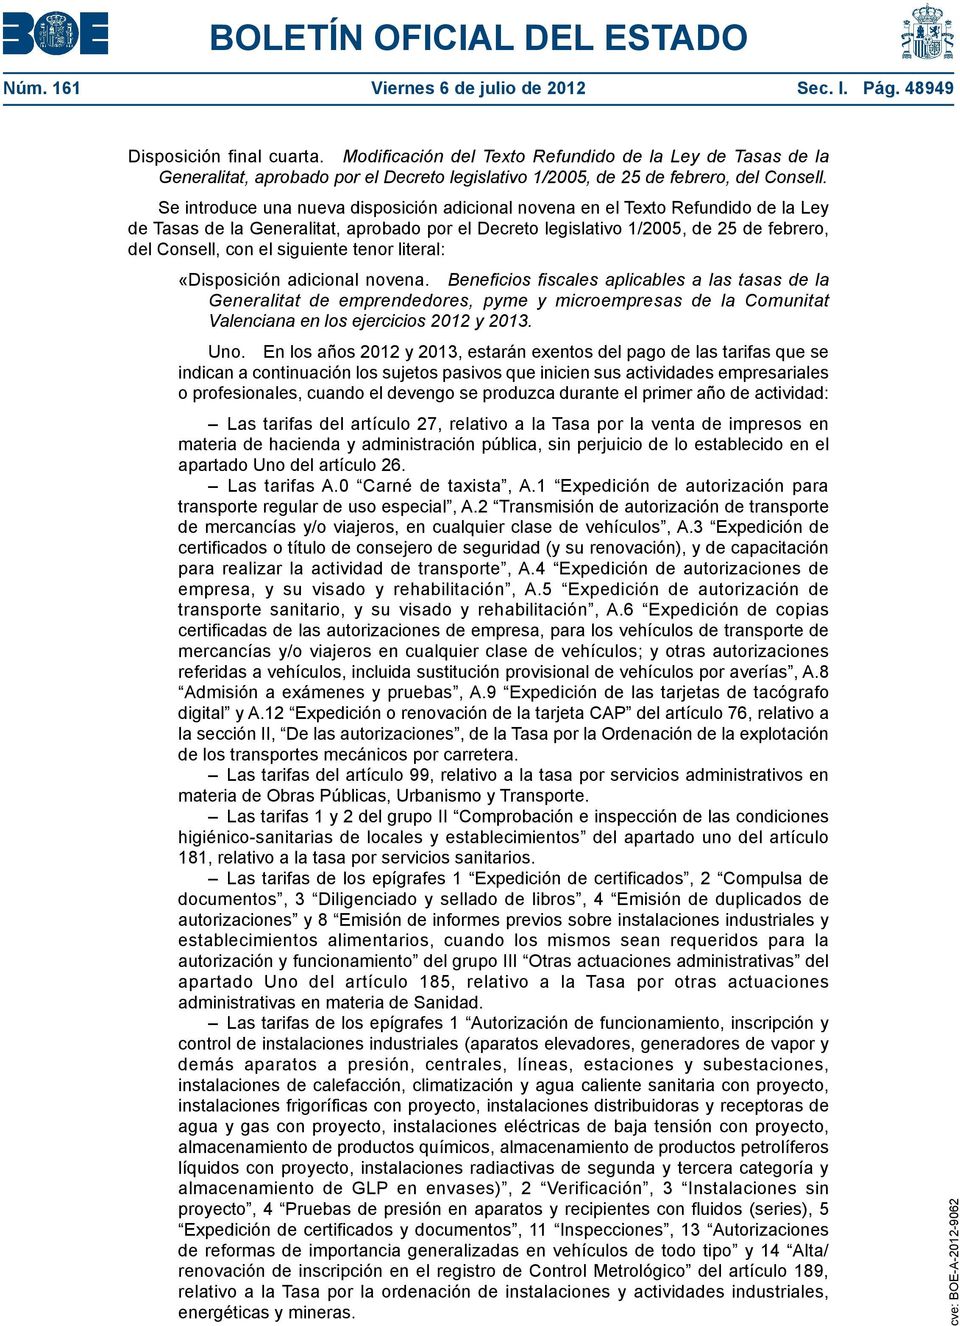 Se introduce una nueva disposición adicional novena en el Texto Refundido de la Ley de Tasas de la Generalitat, aprobado por el Decreto legislativo 1/2005, de 25 de febrero, del Consell, con el